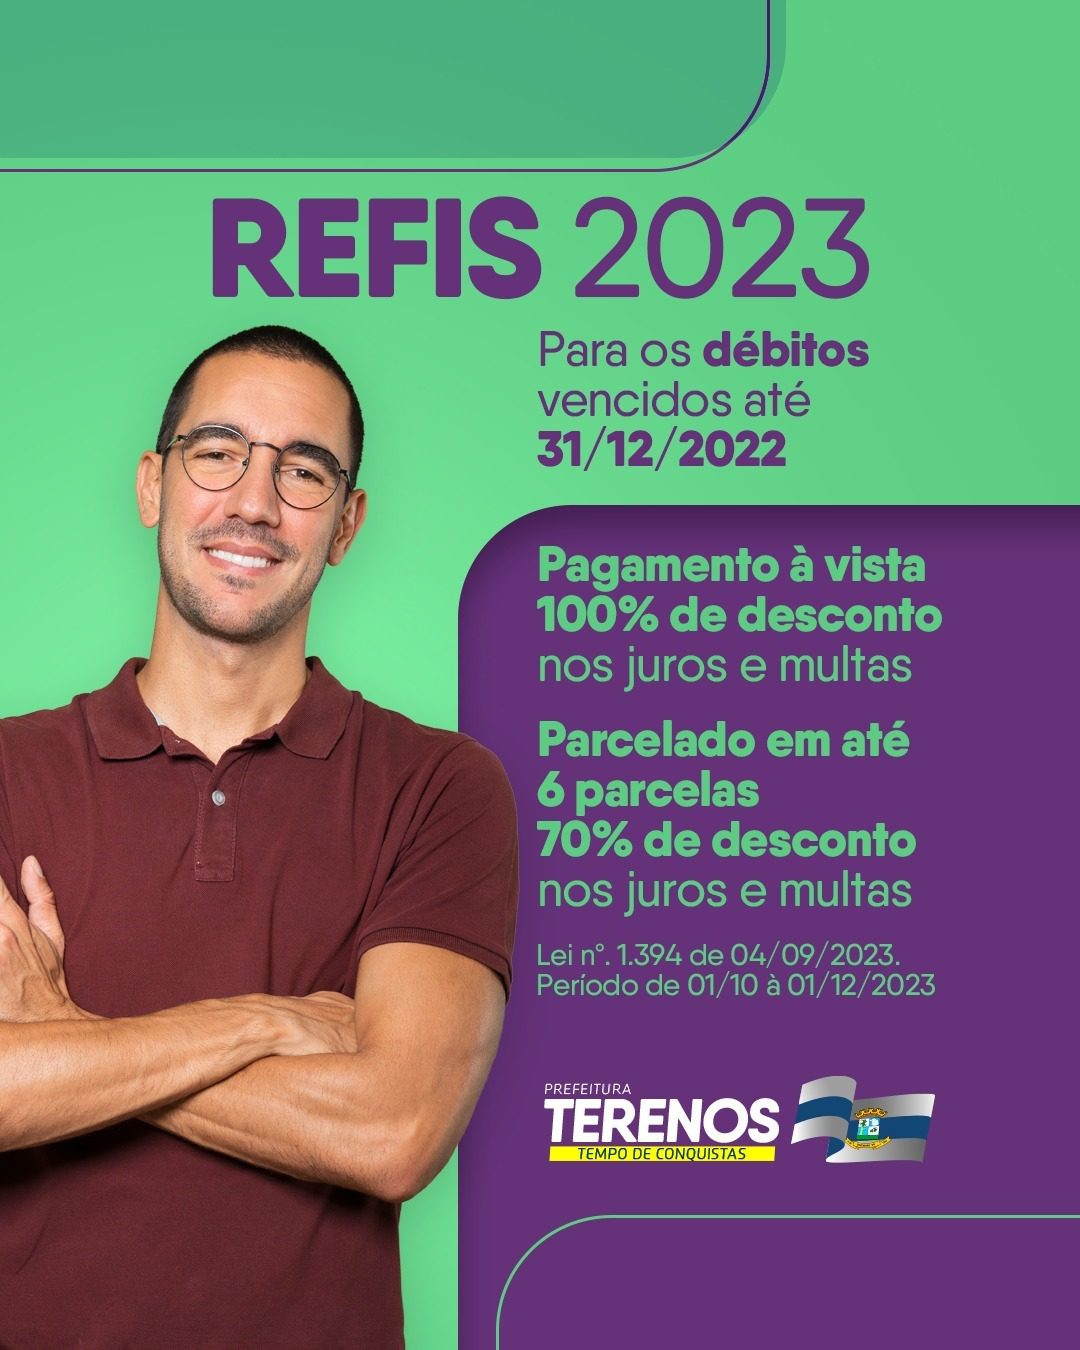 Refis 2023